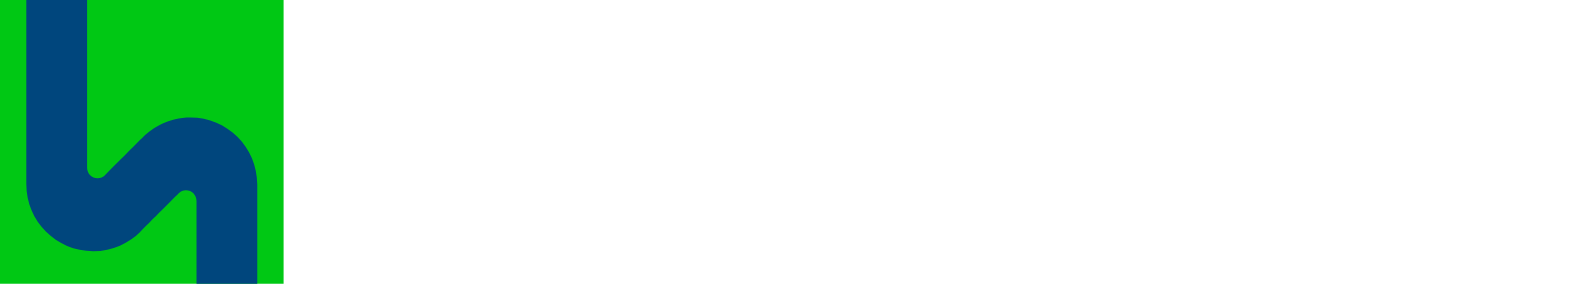 Gelsenwasser logo large for dark backgrounds (transparent PNG)